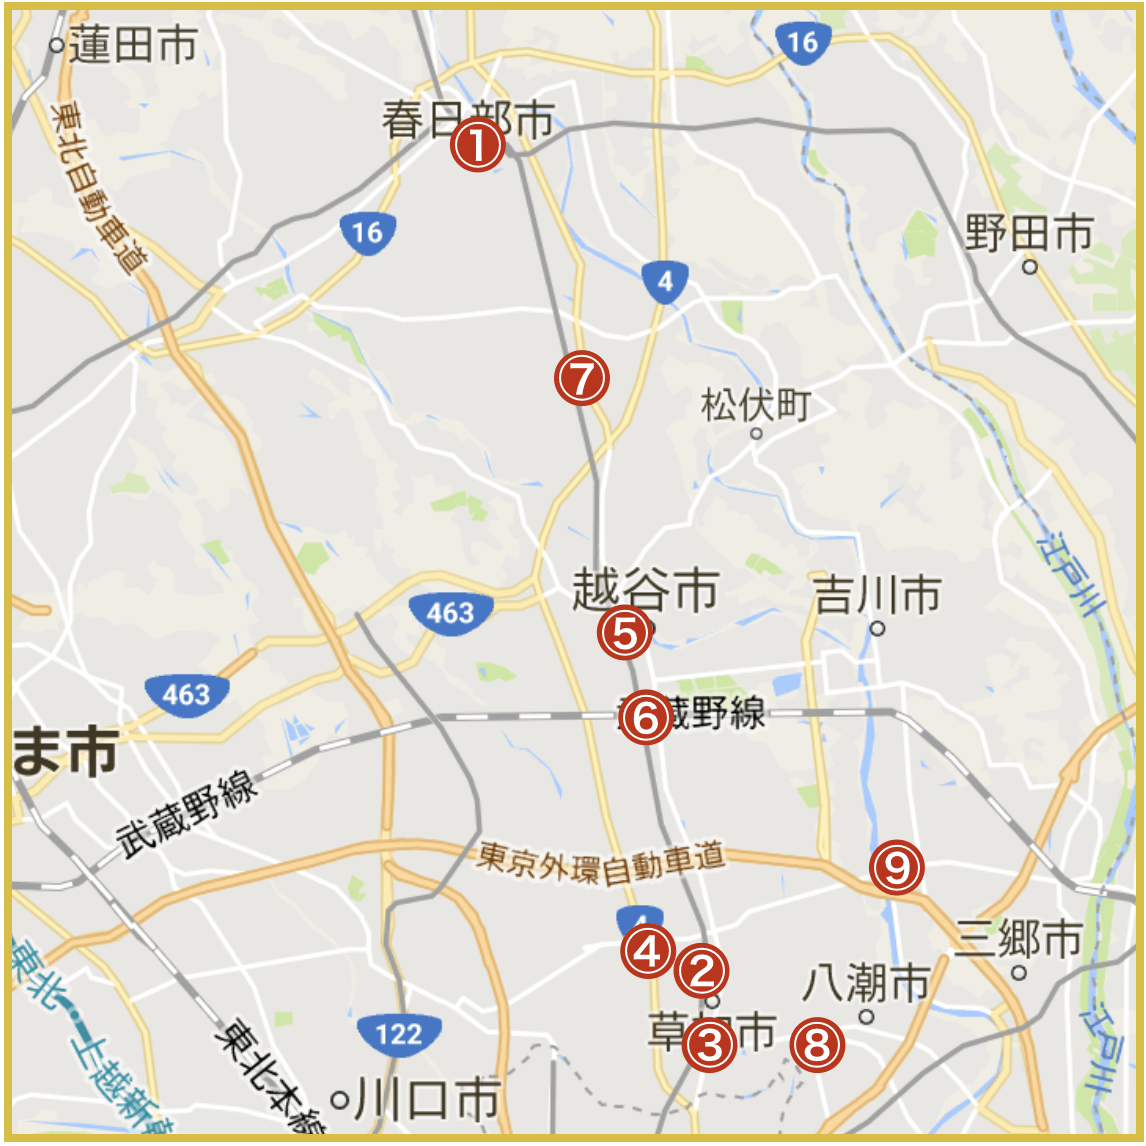 埼玉県東部地域にあるアイフル店舗・ATMの位置